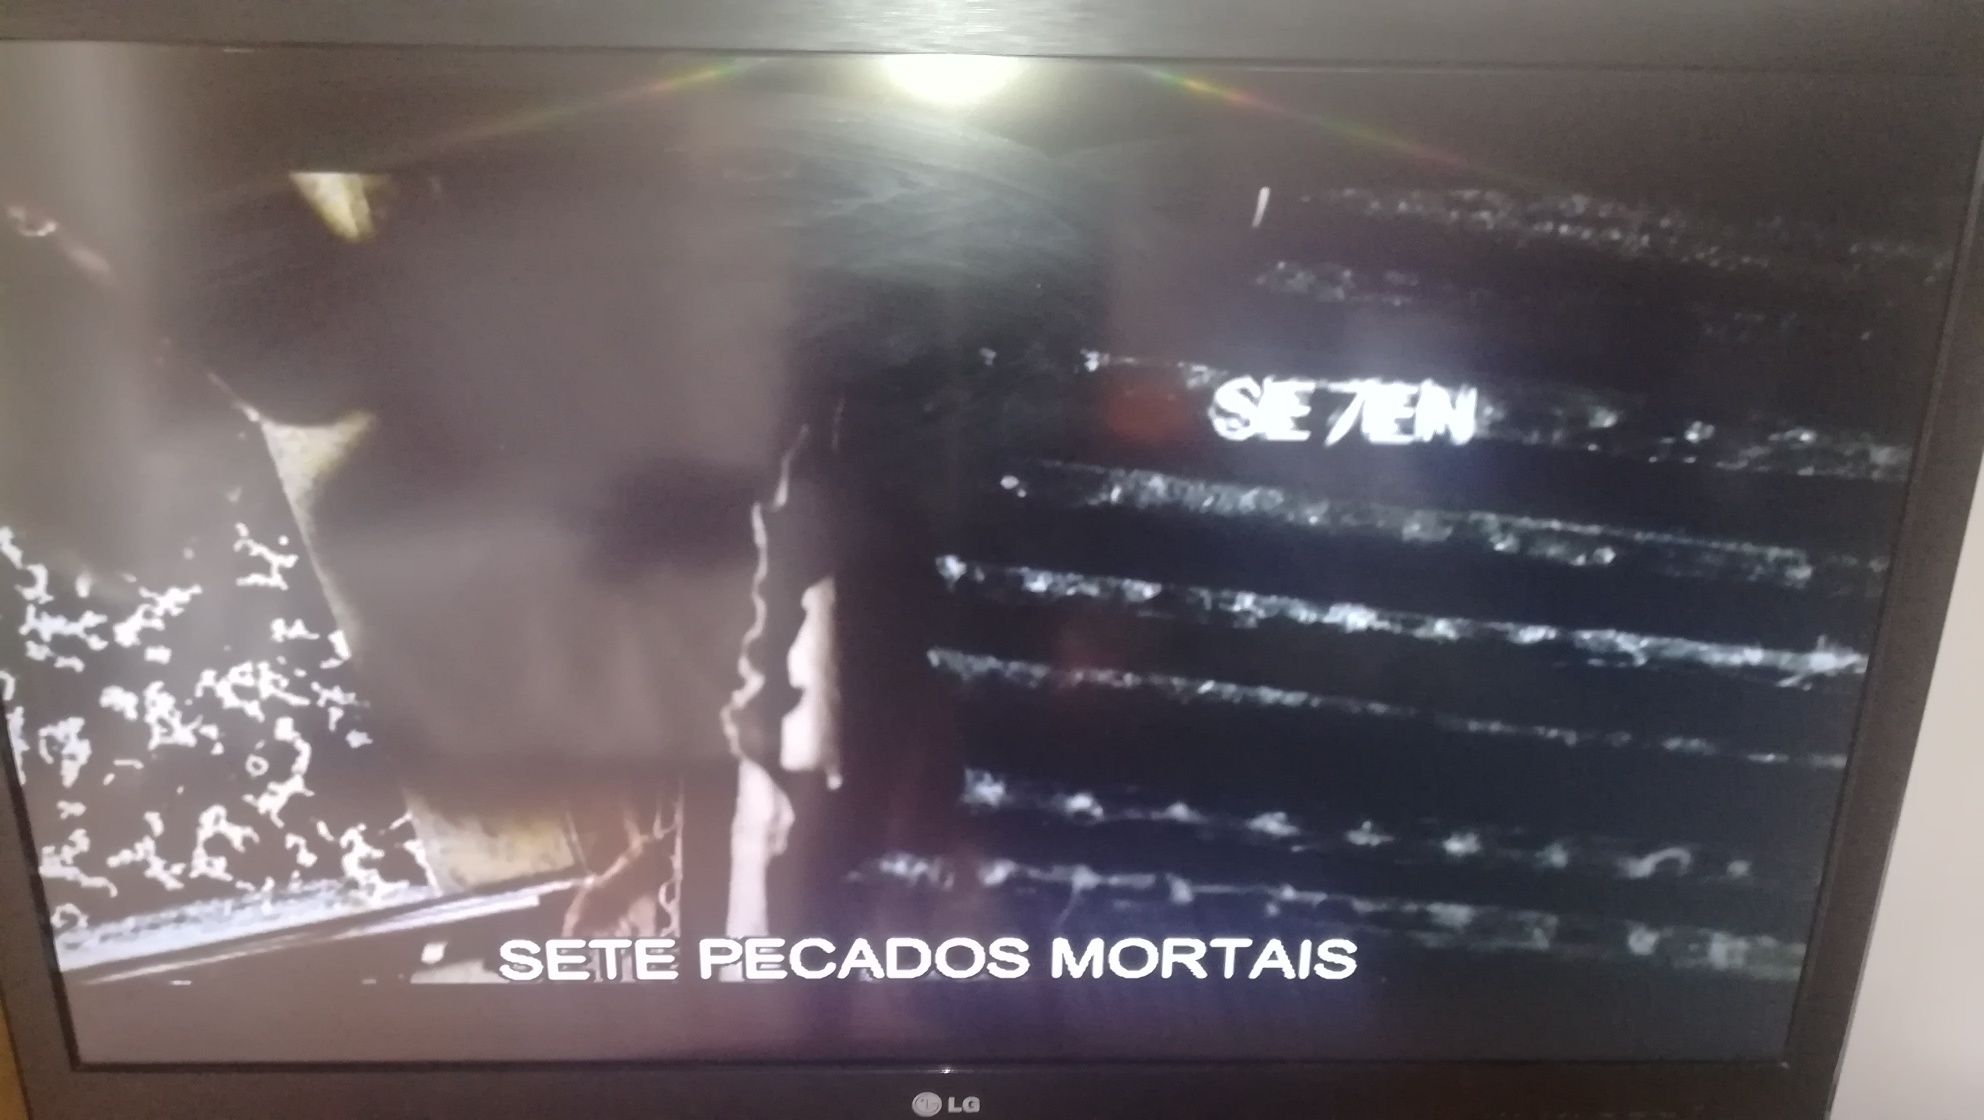 DVD "Seven - 7 pecados Mortais" 1995 (COMO NOVO)